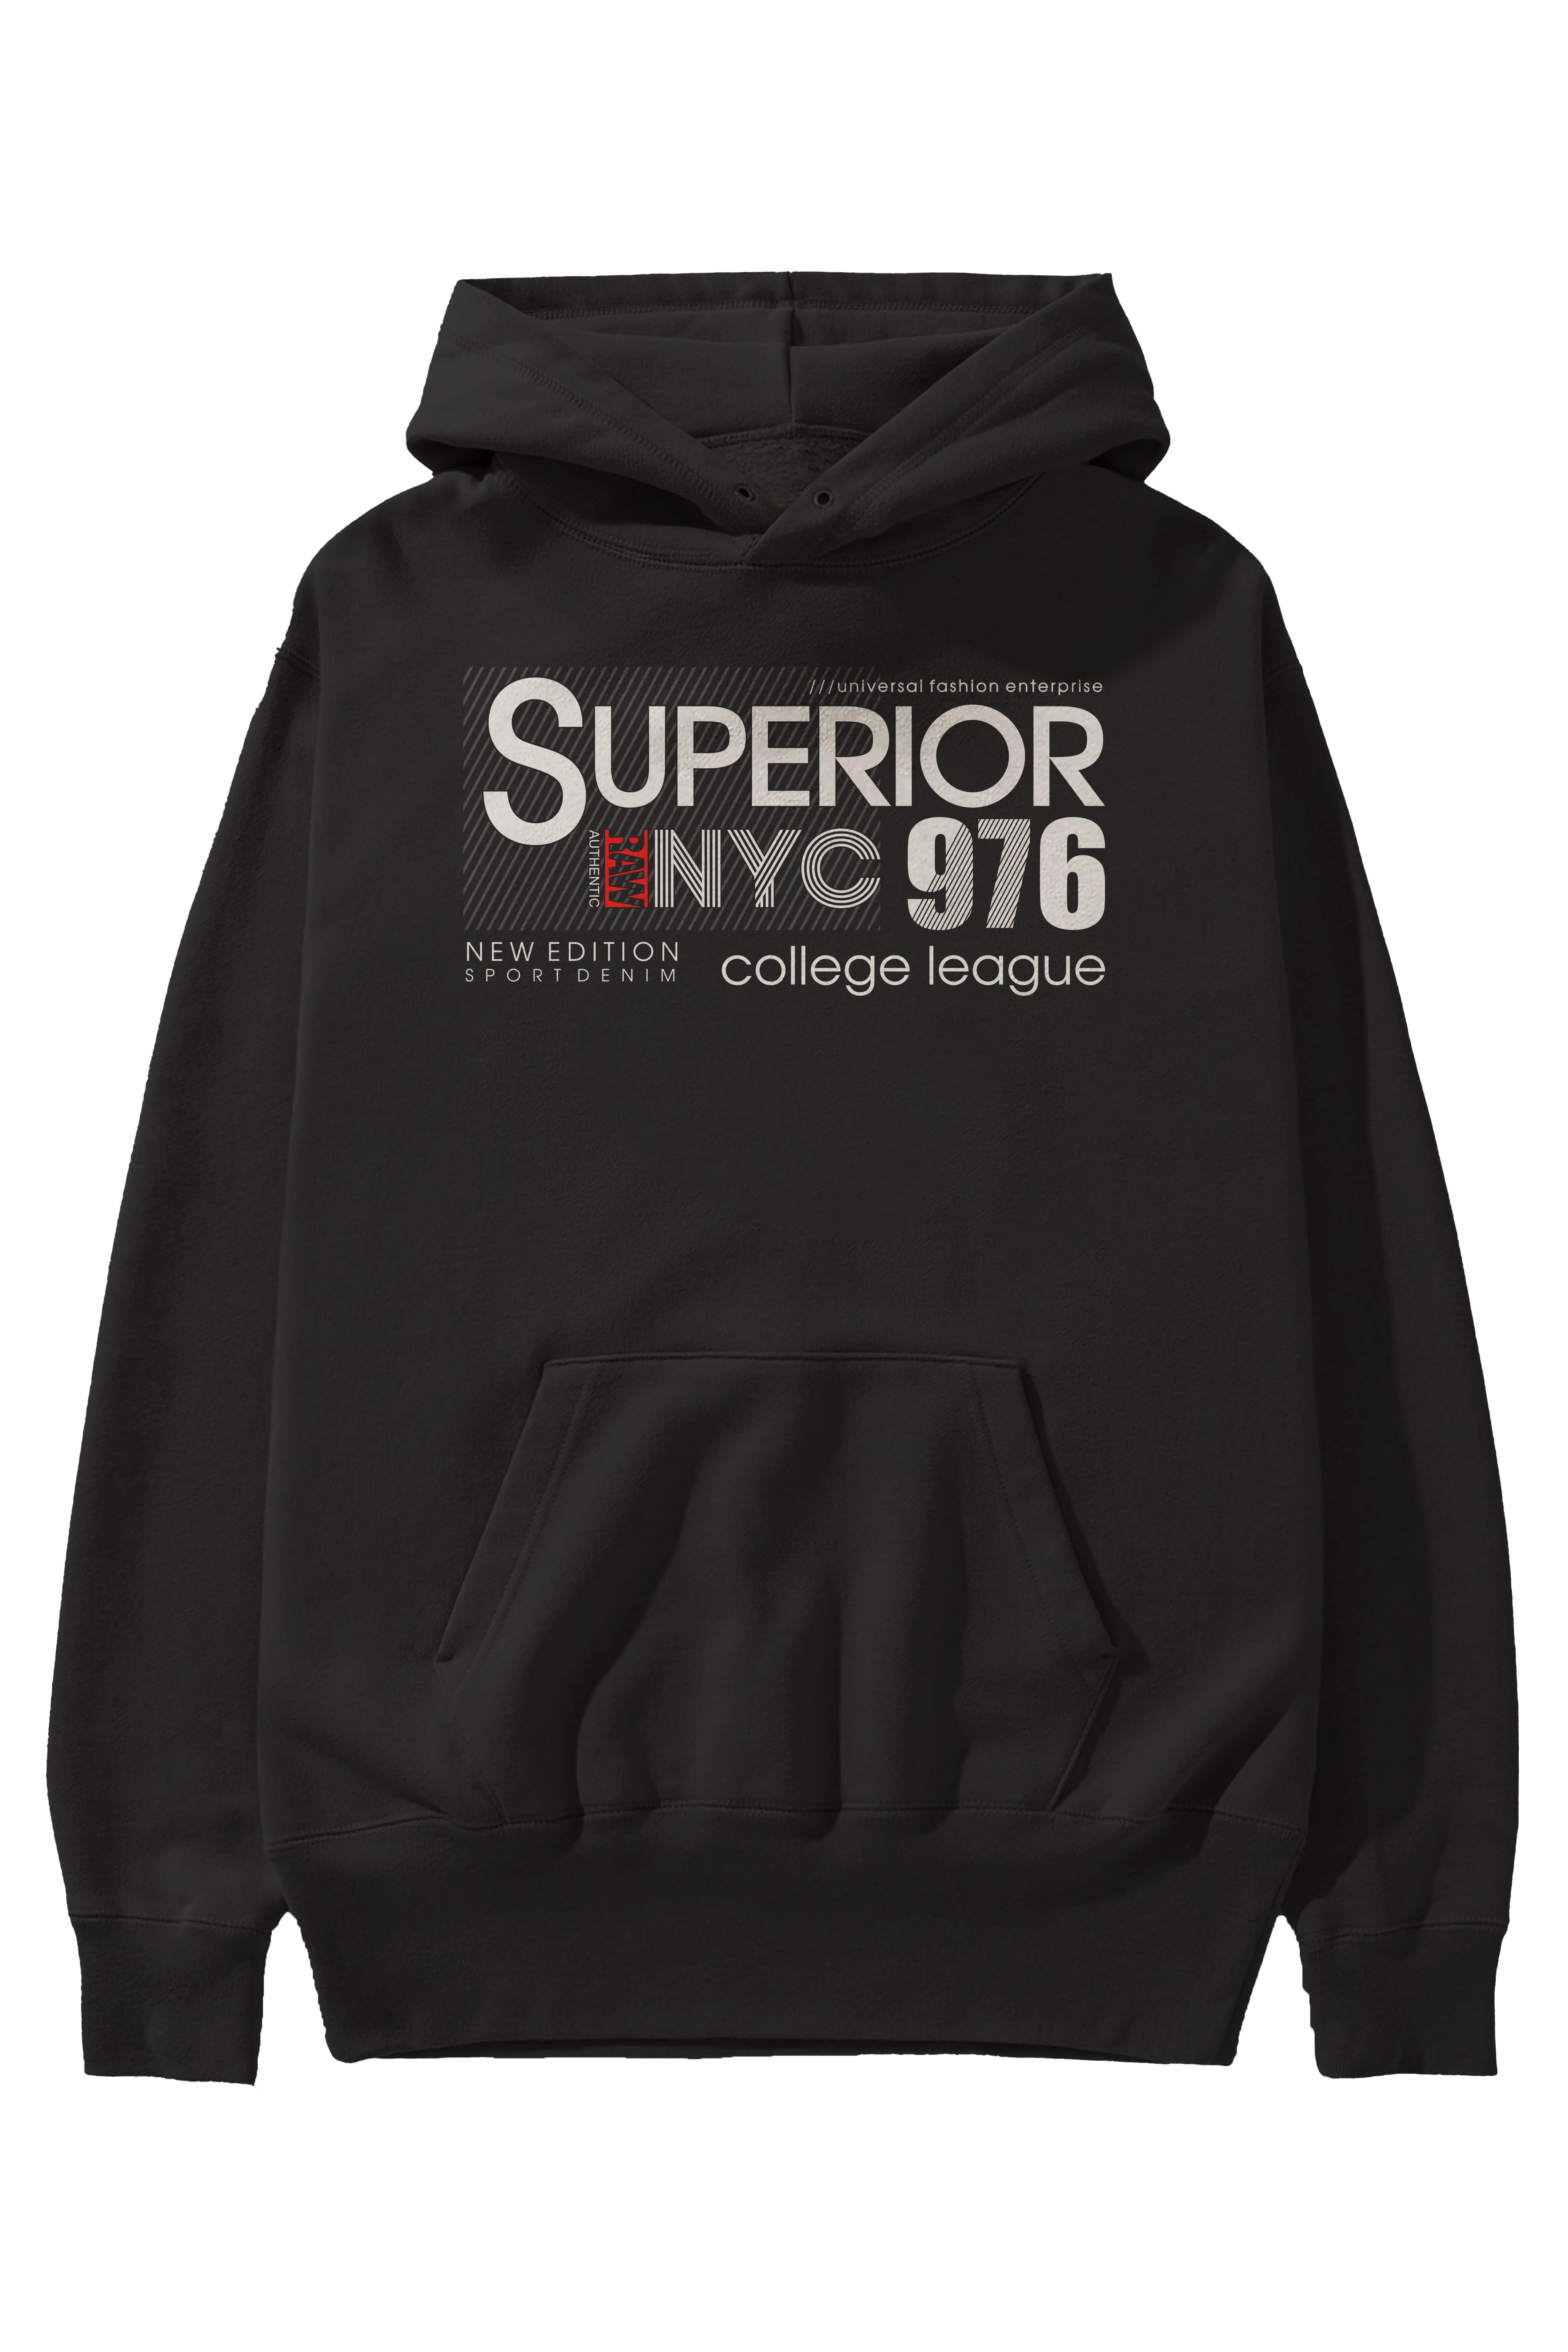 Superior 976 Ön Baskılı Oversize Hoodie Kapüşonlu Sweatshirt Erkek Kadın Unisex